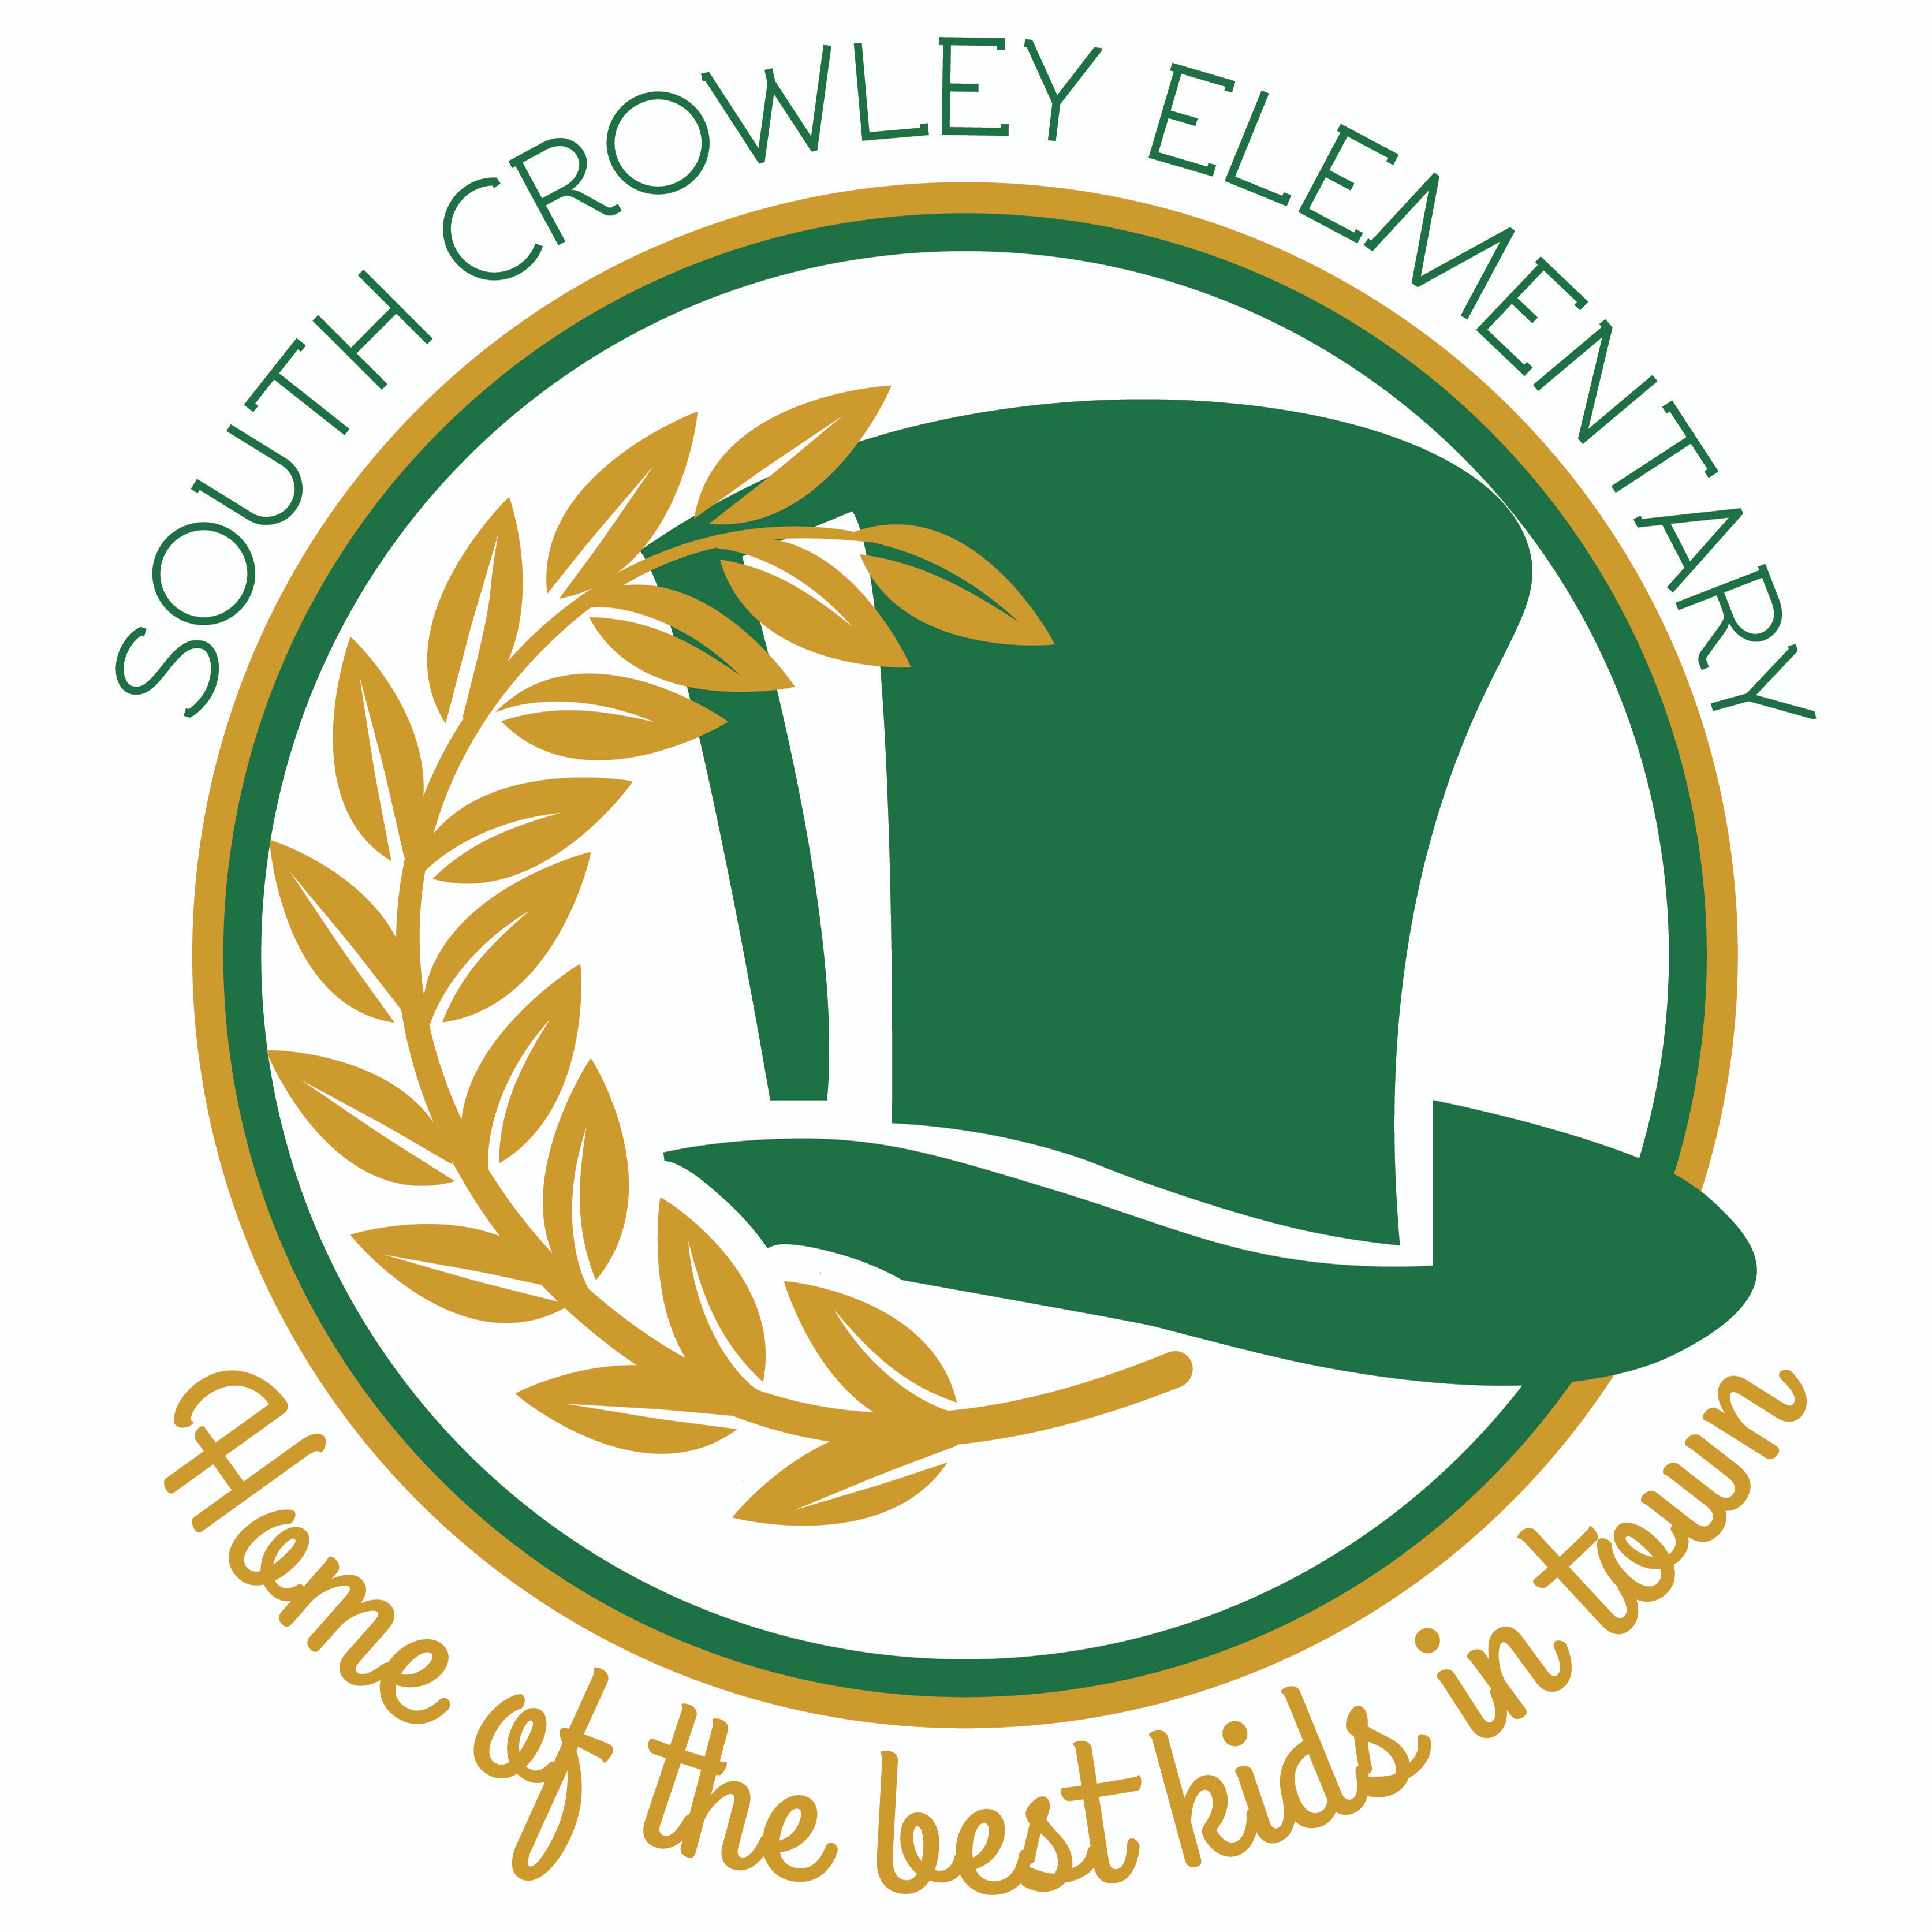 South Crowley mascot